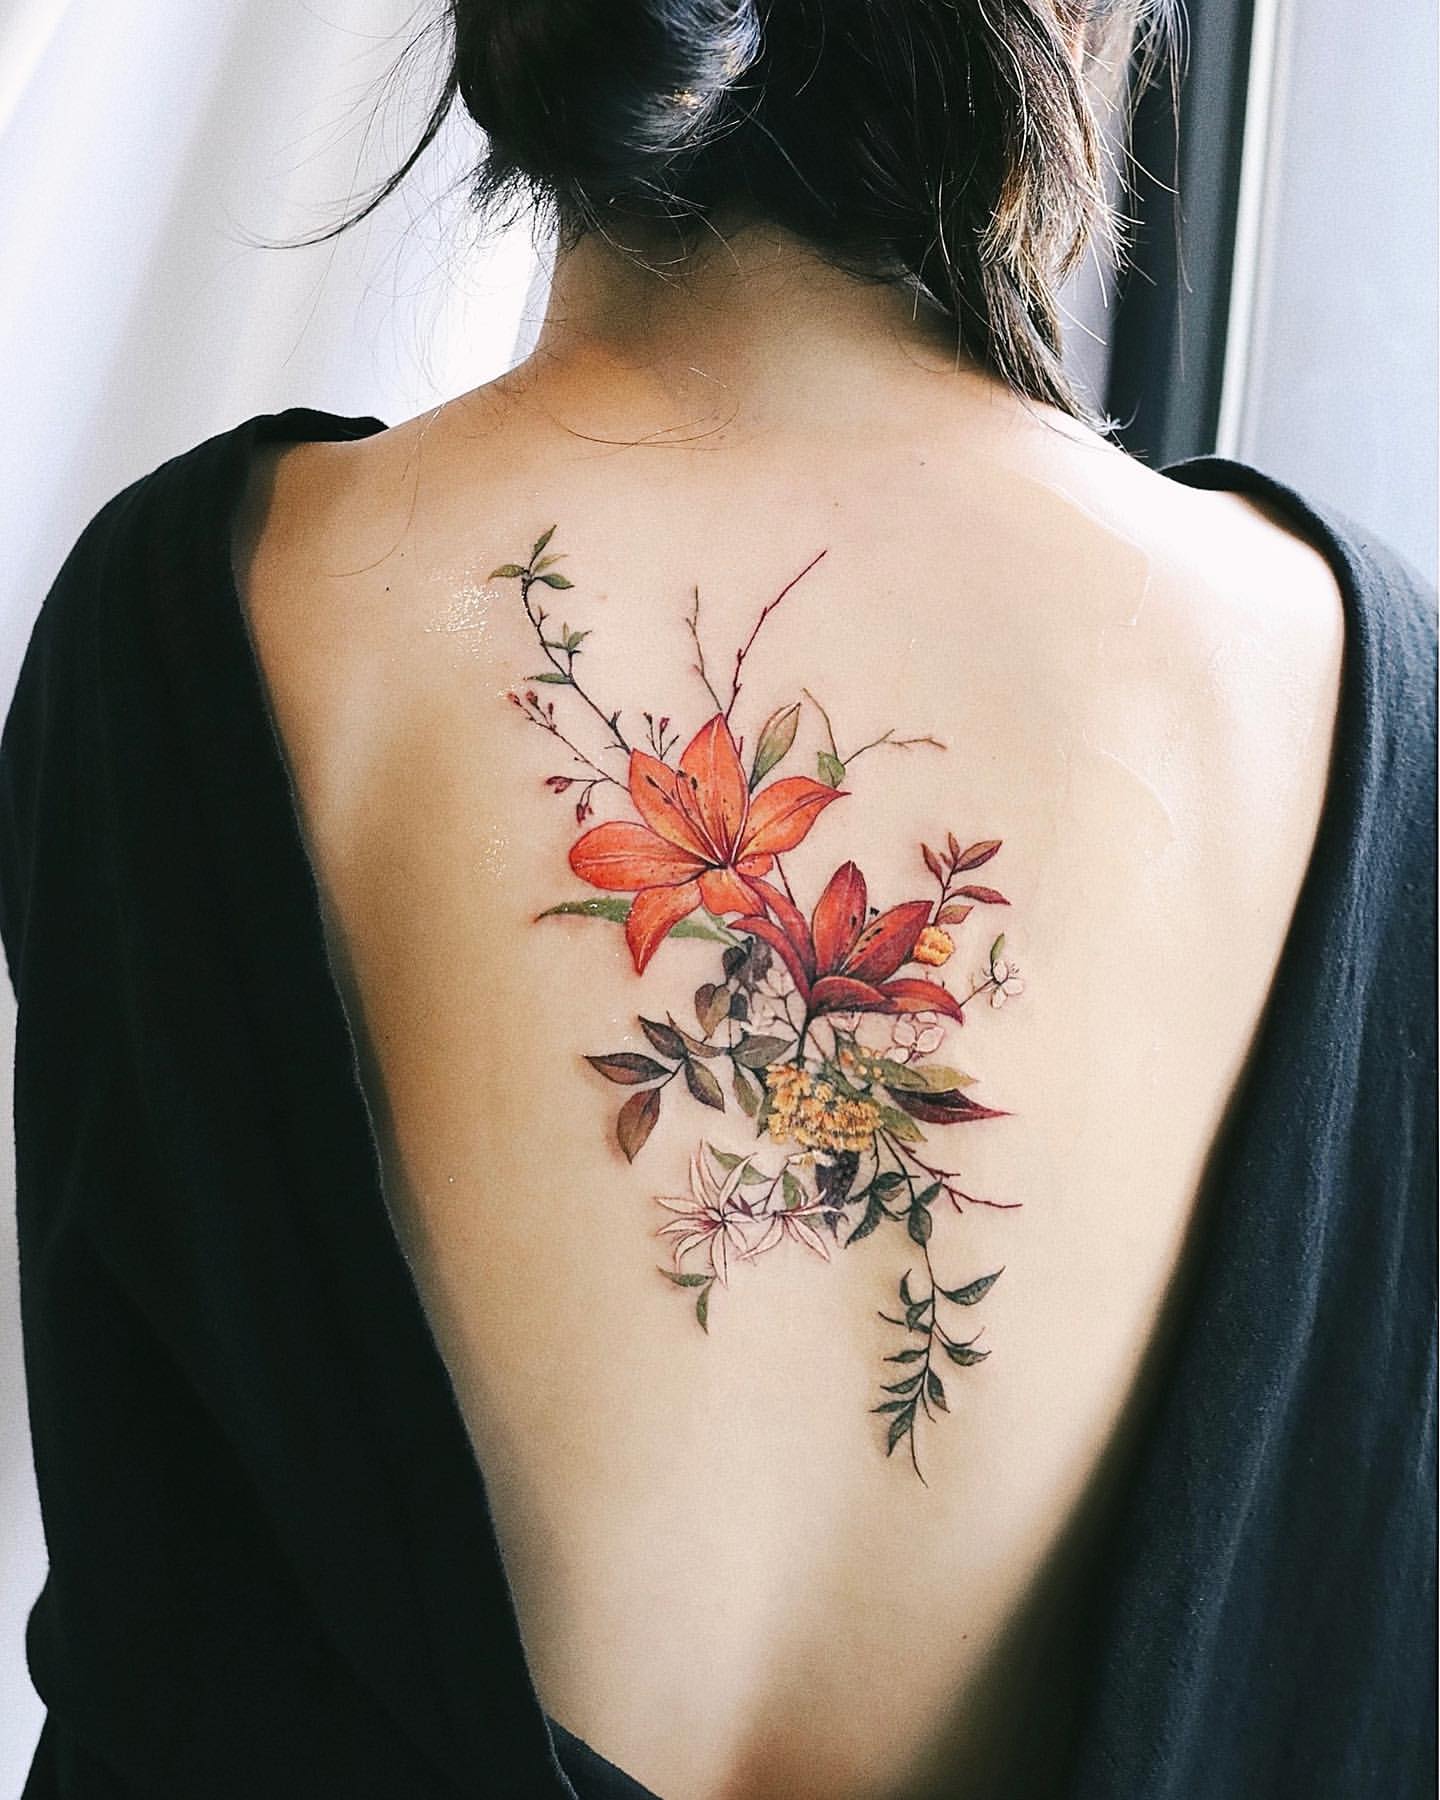 Lily Tattoo Ideas 30